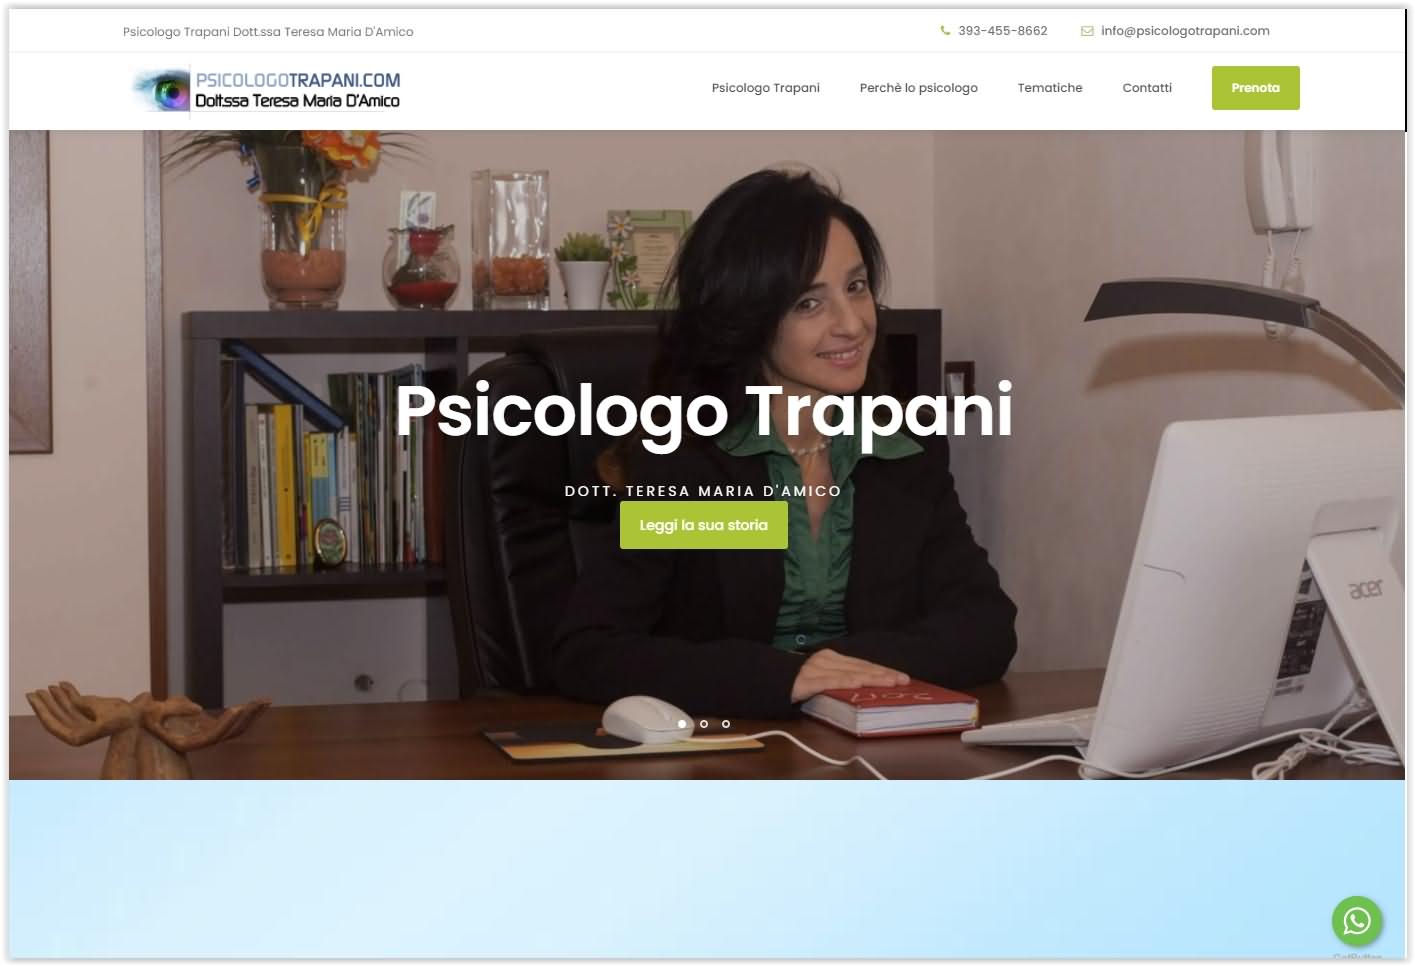 psicologotrapani.com